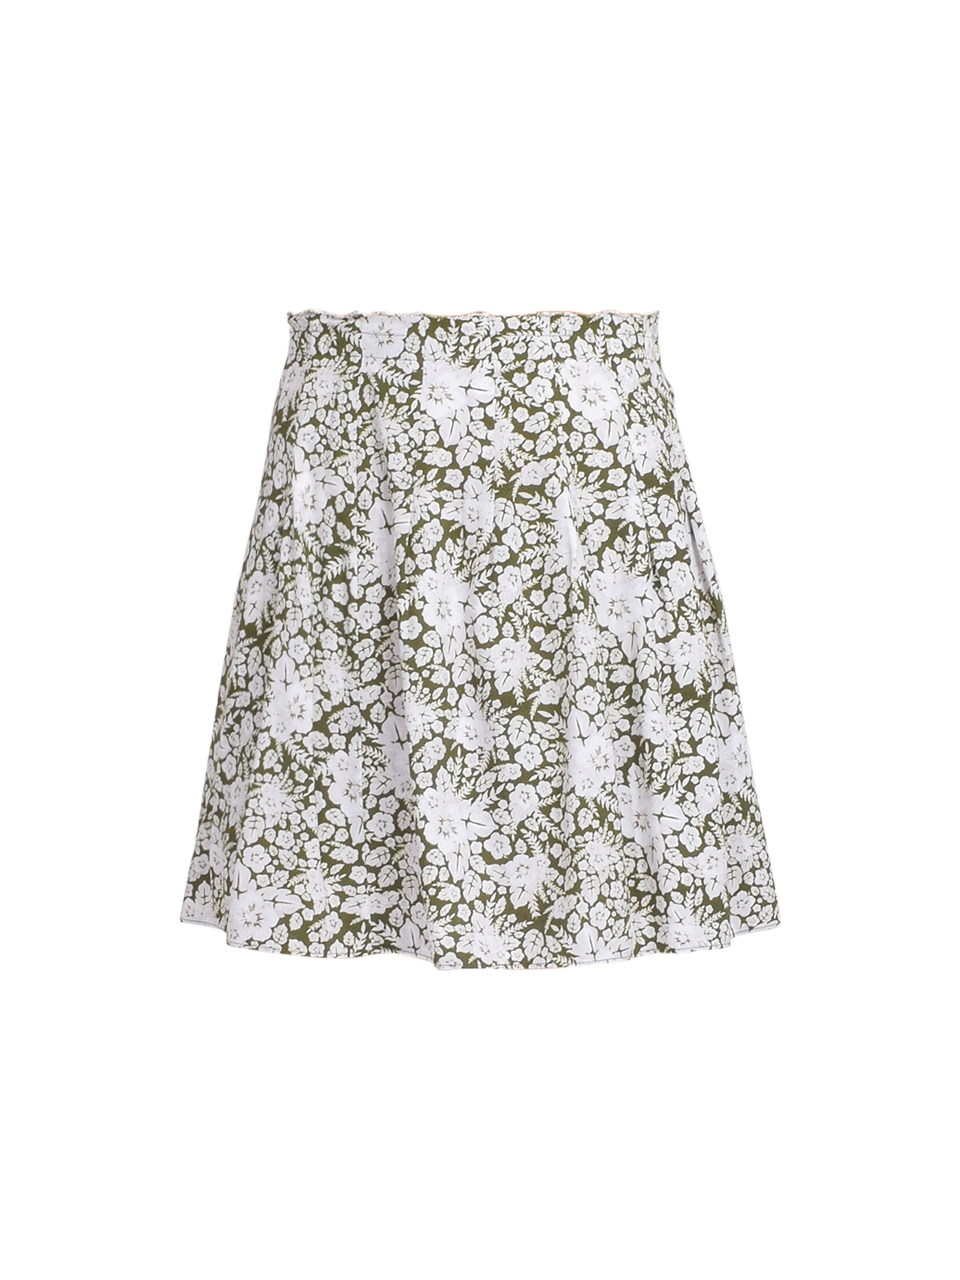 Bellerose Lexie Skirt Product Shot